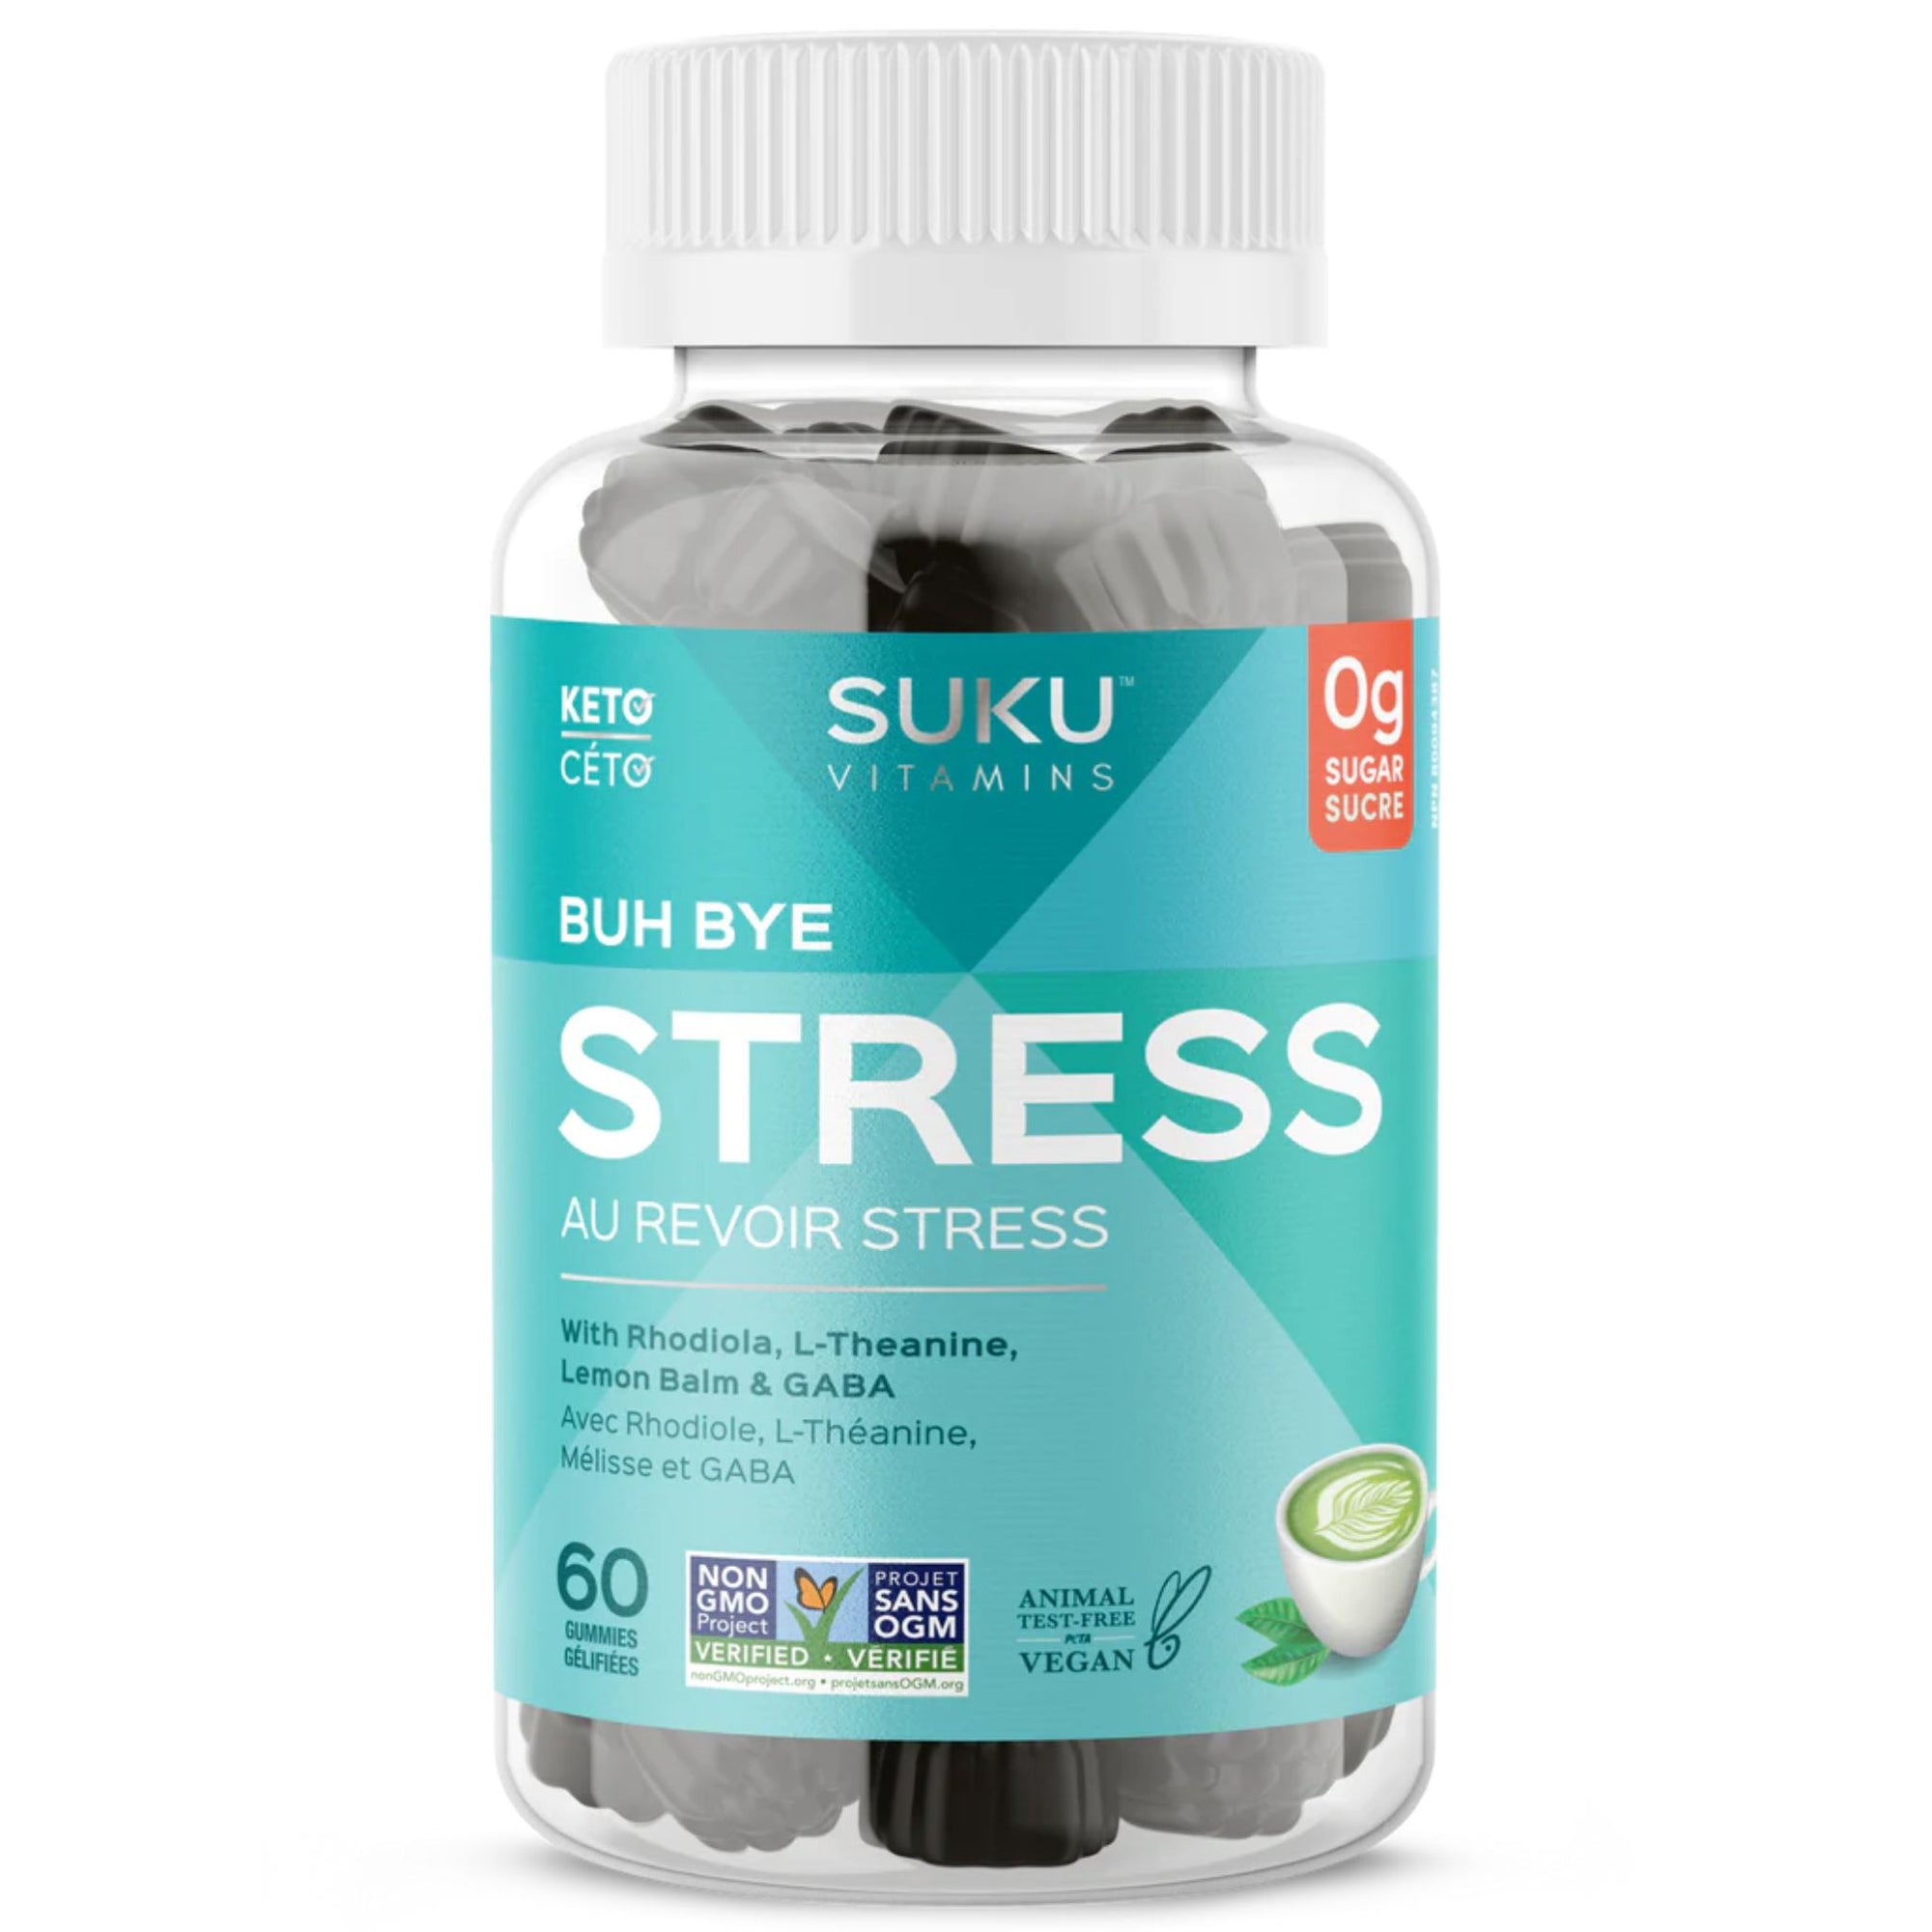 Suku Buh Bye Stress 60 Gummies bottle - with Rhodiola, L-theanine, Lemon Balm & GABA. 